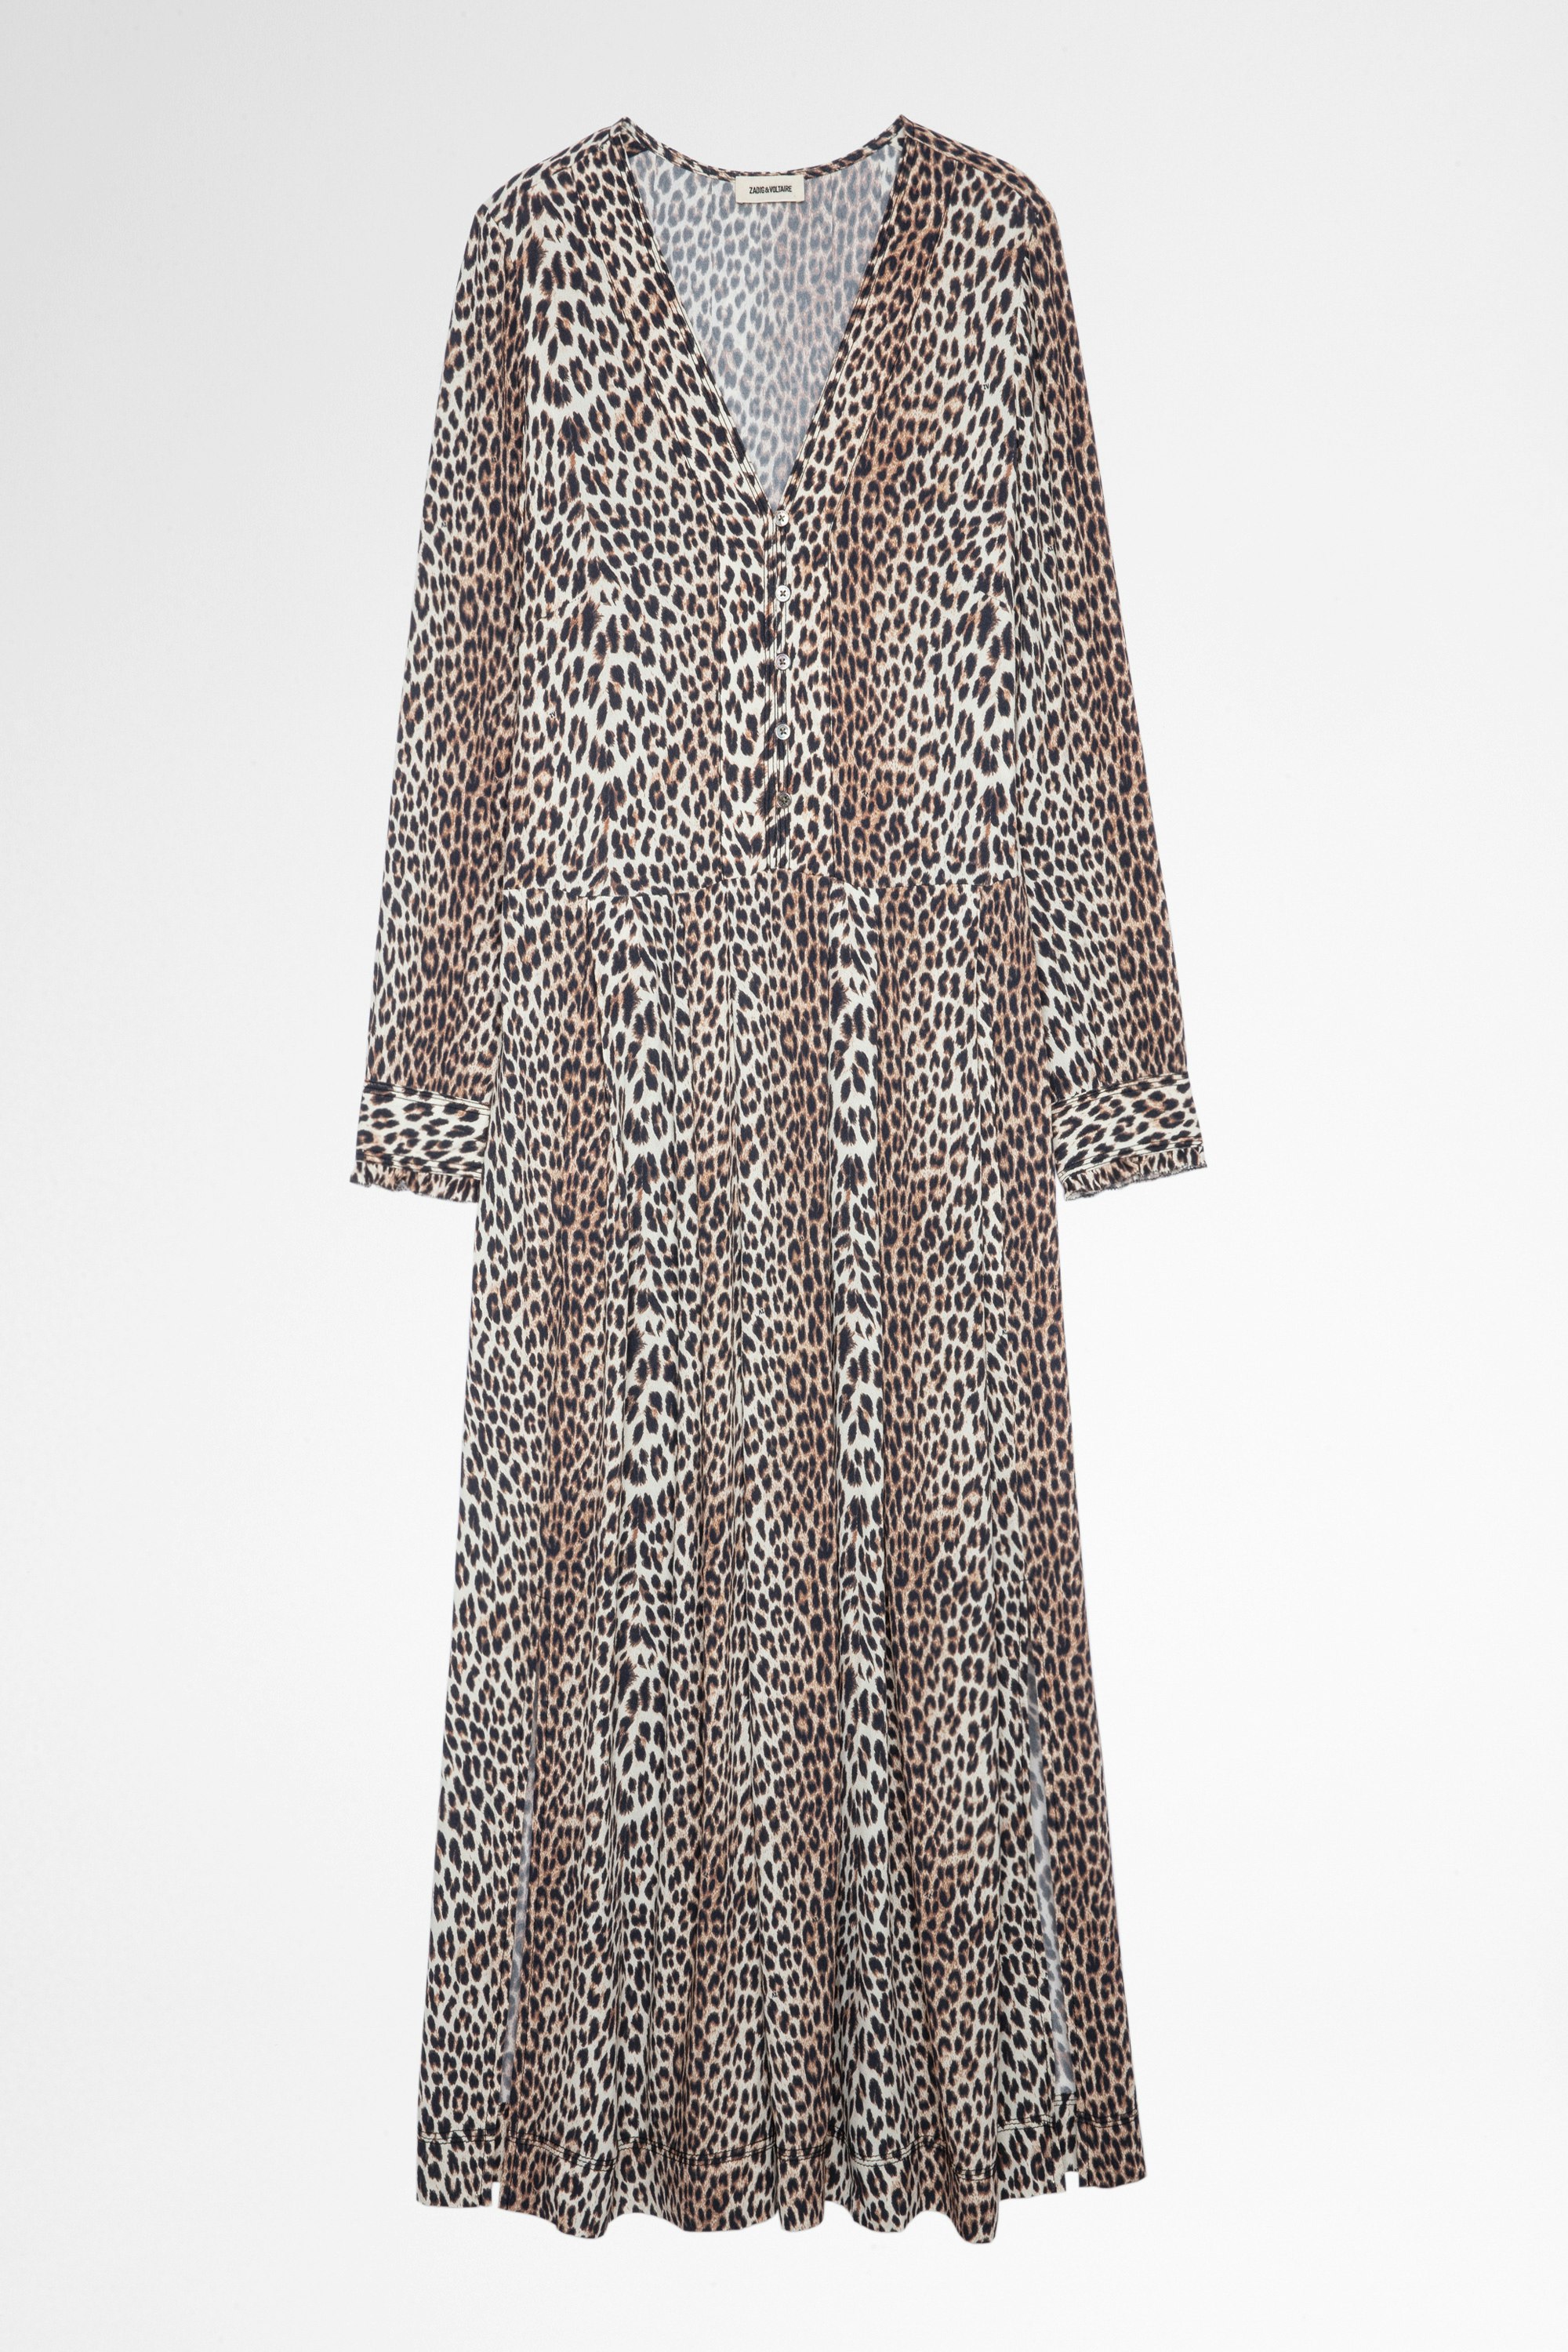 Roux Leopard Dress Women’s long dress in leopard print